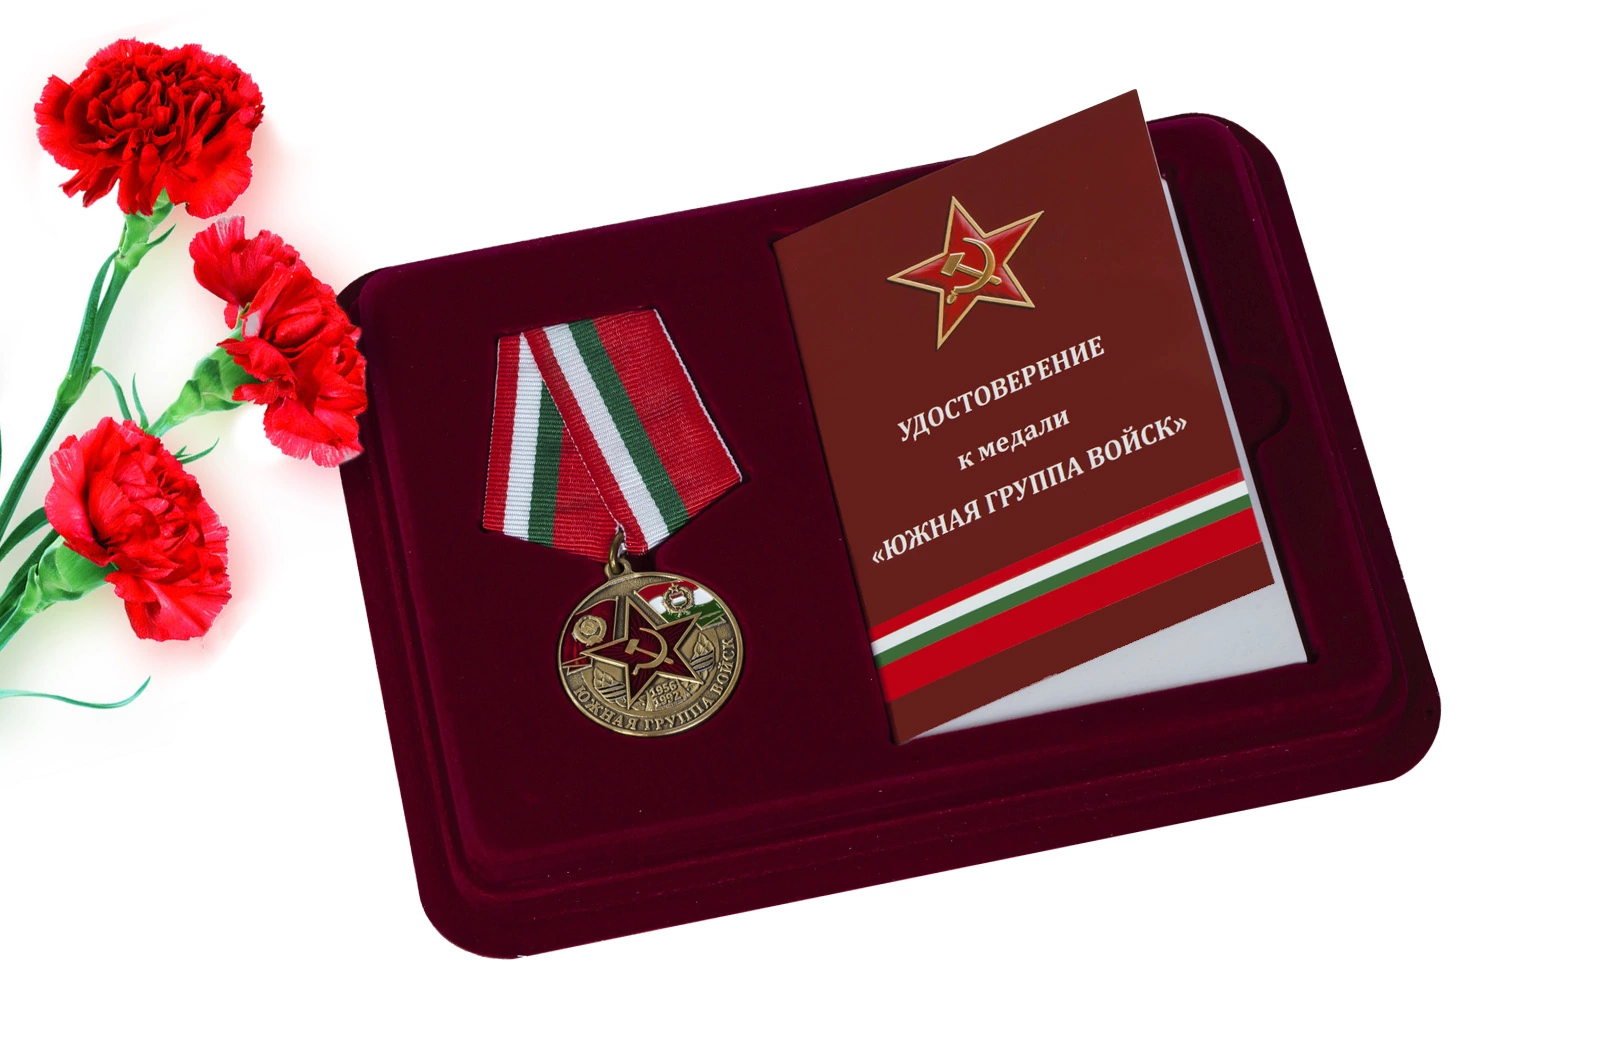 Медаль "Южная группа войск 1956-1992" в футляре с отделением под удостоверение